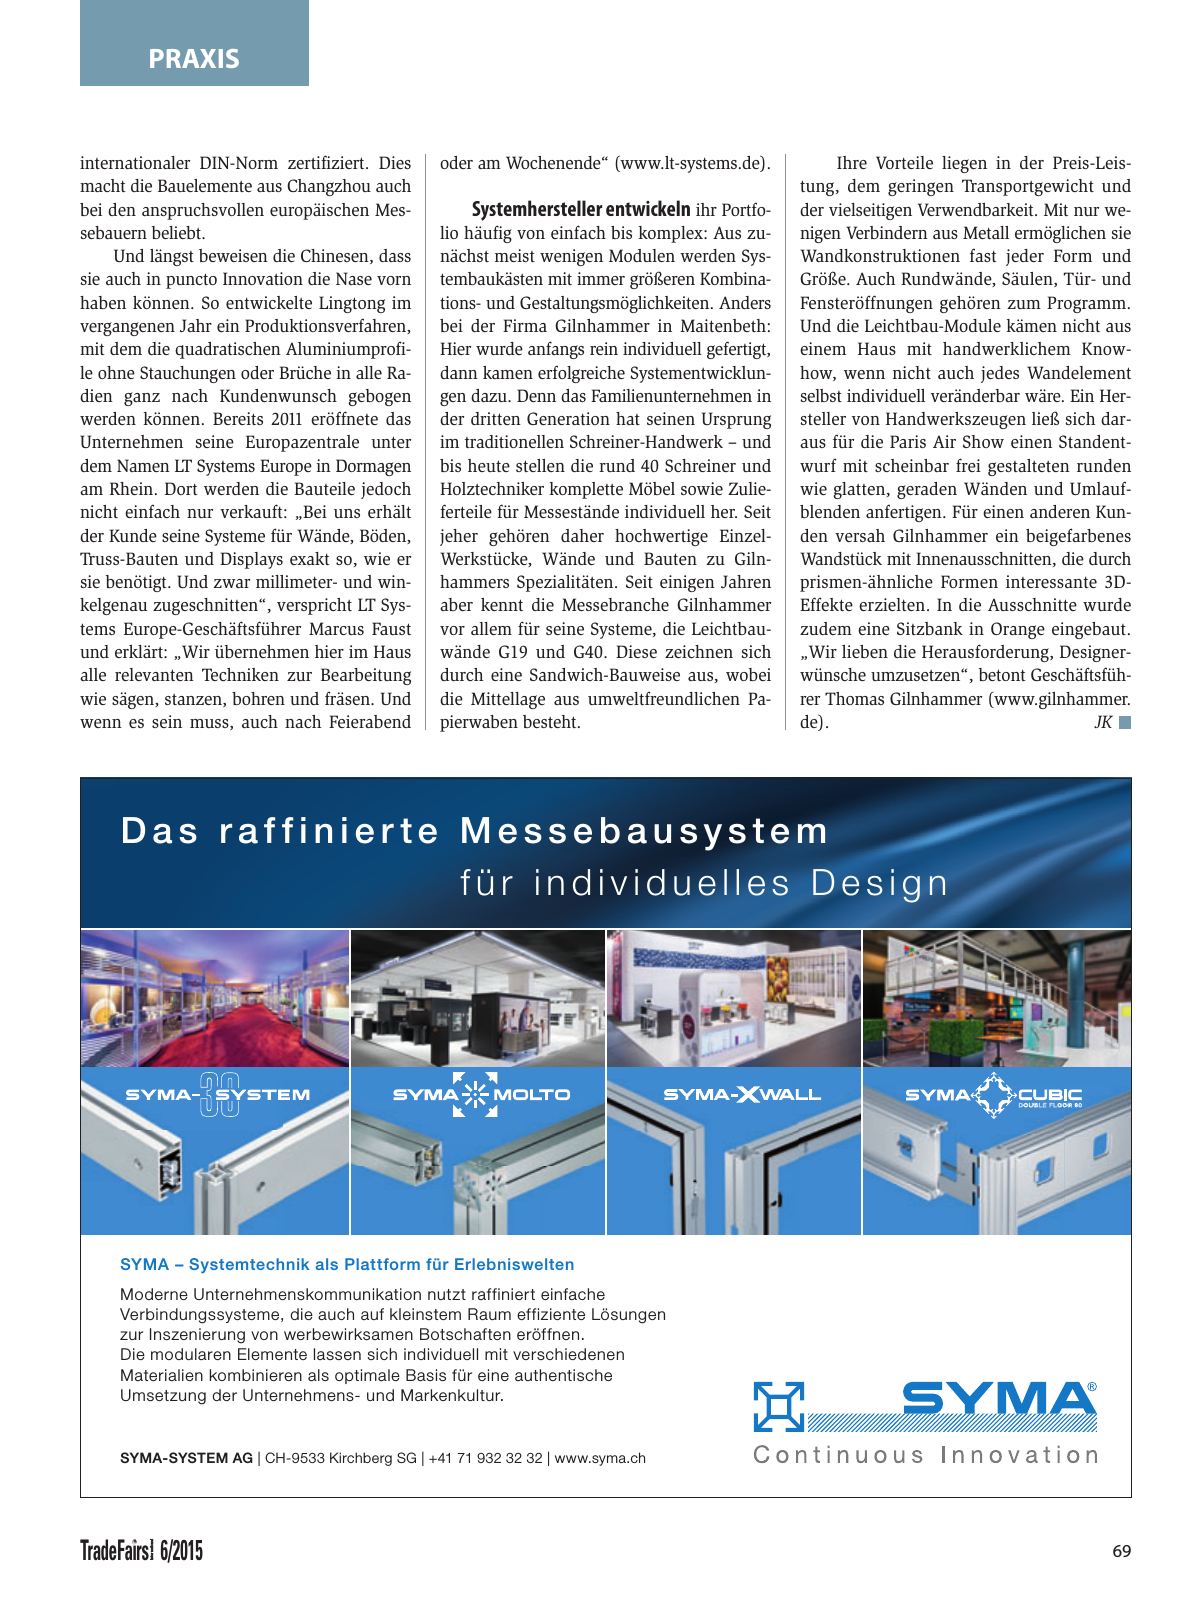 Vorschau TFI Trade-Fairs-International 06/2015 Seite 69